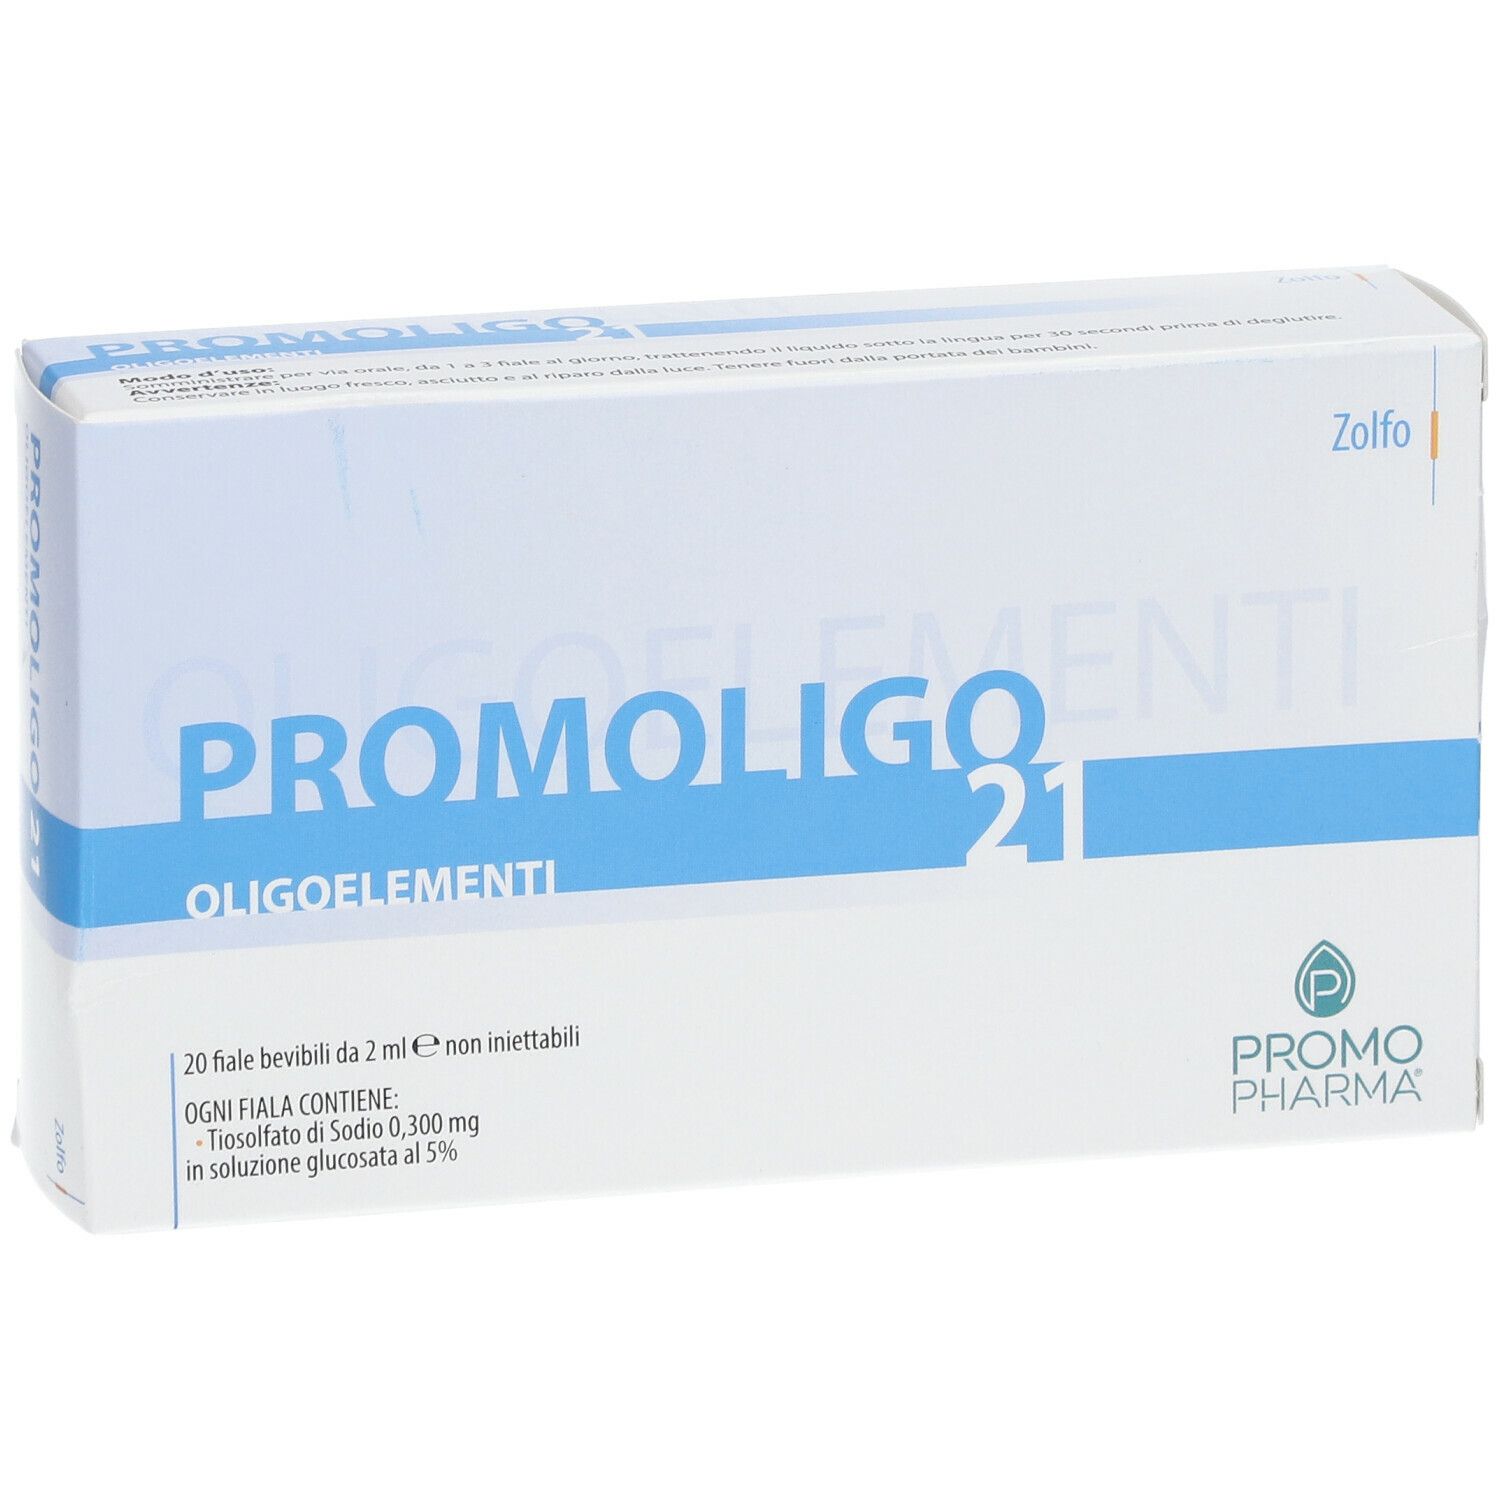 PromoPharma® PROMOLIGO 21 Zolfo Oligoelementi